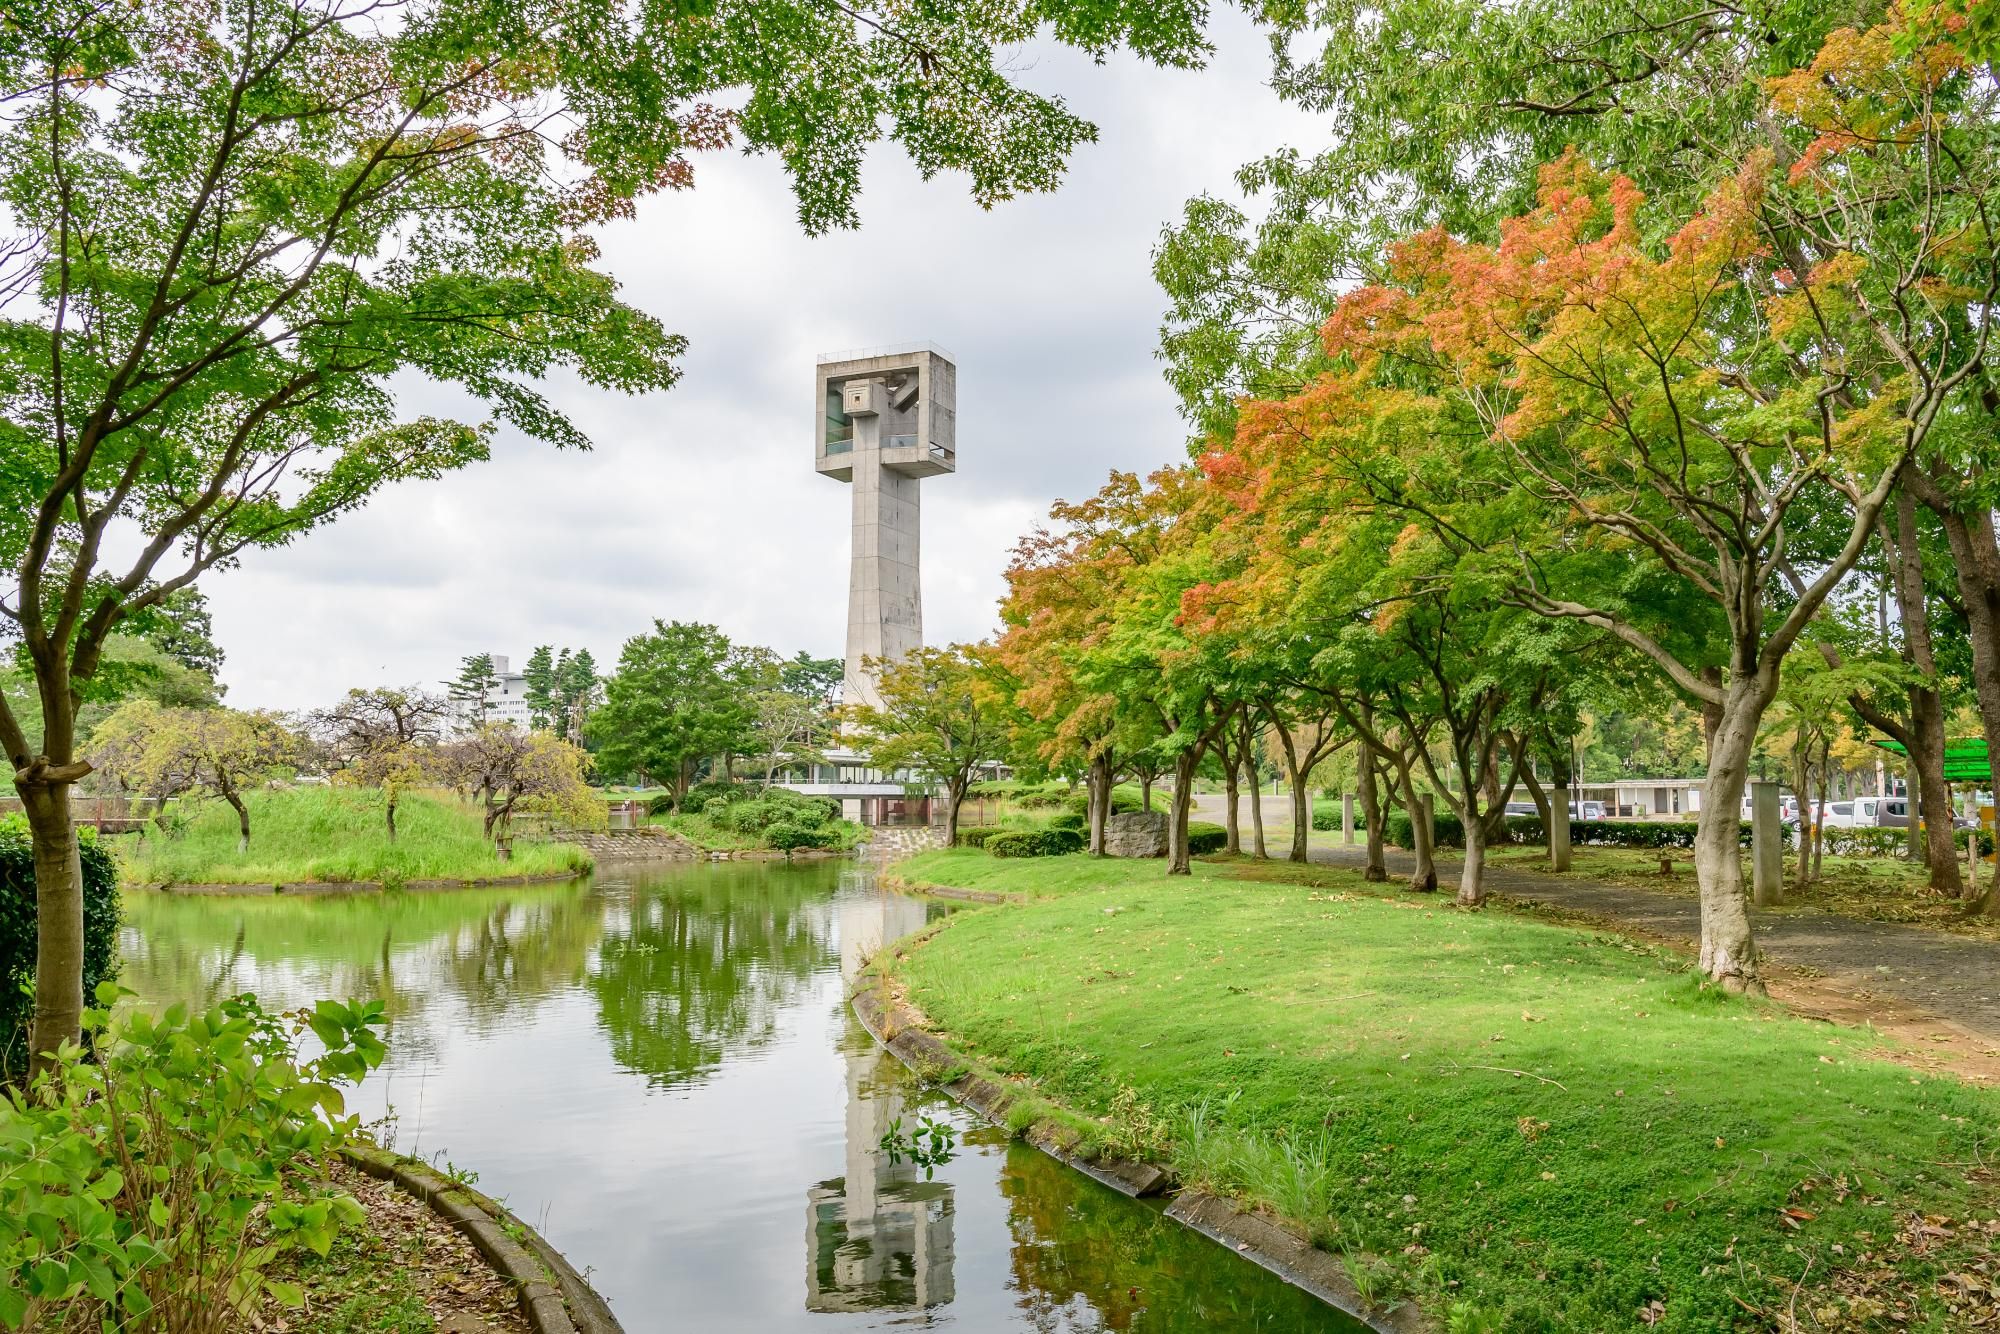 茨城縣筑波市松見公園的展望塔，全高44.4米，是該市的地標建築。這座展望塔由著名建築師菊竹清訓設計，其獨特外觀常被比喻為「開瓶器」